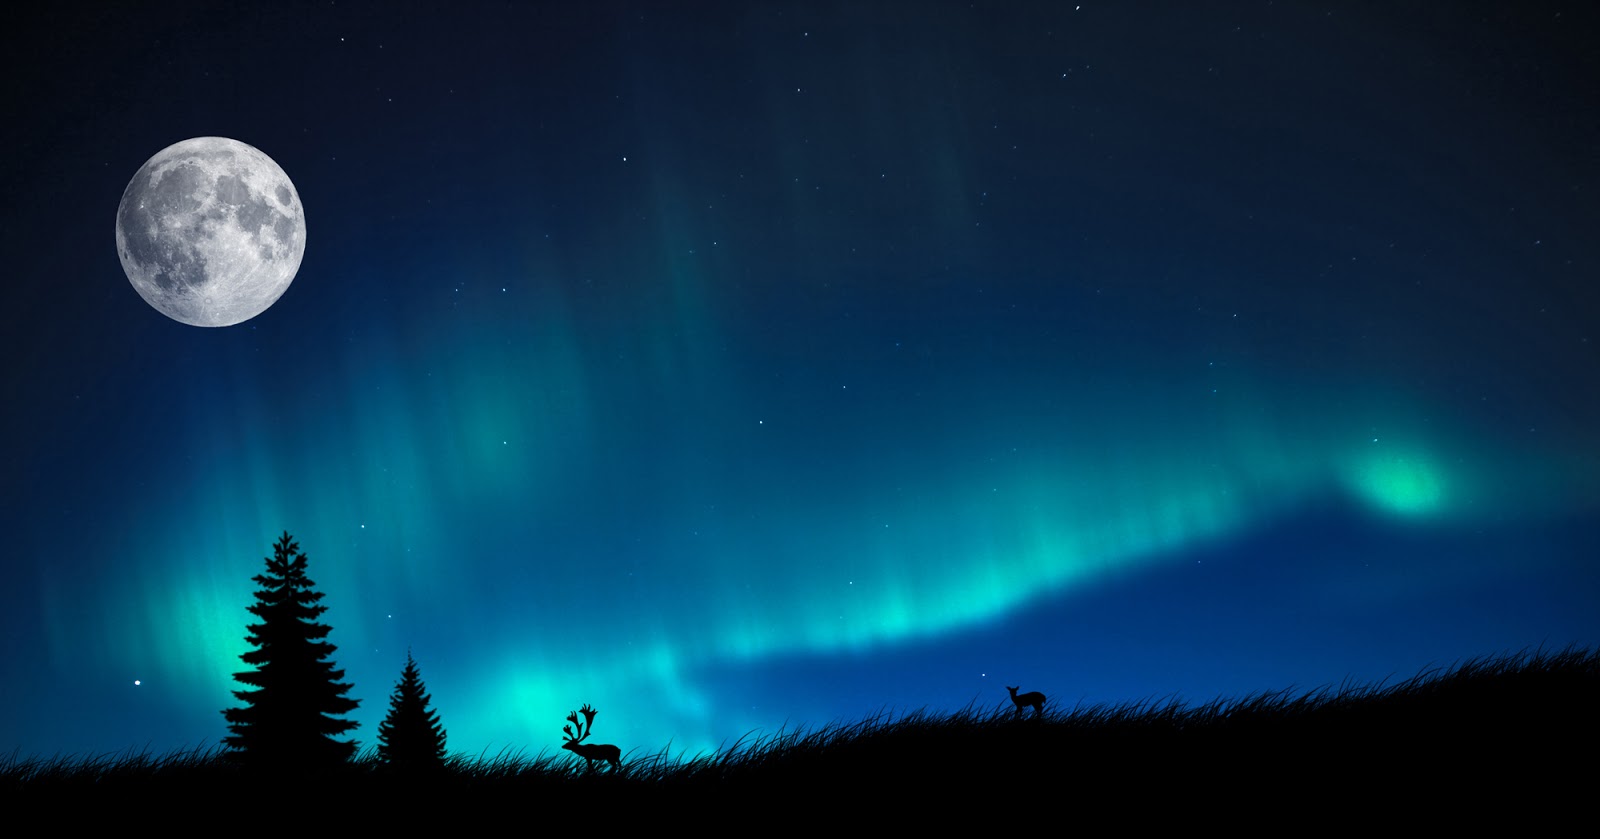 Andrmeda vises incrveis   Aurora boreal